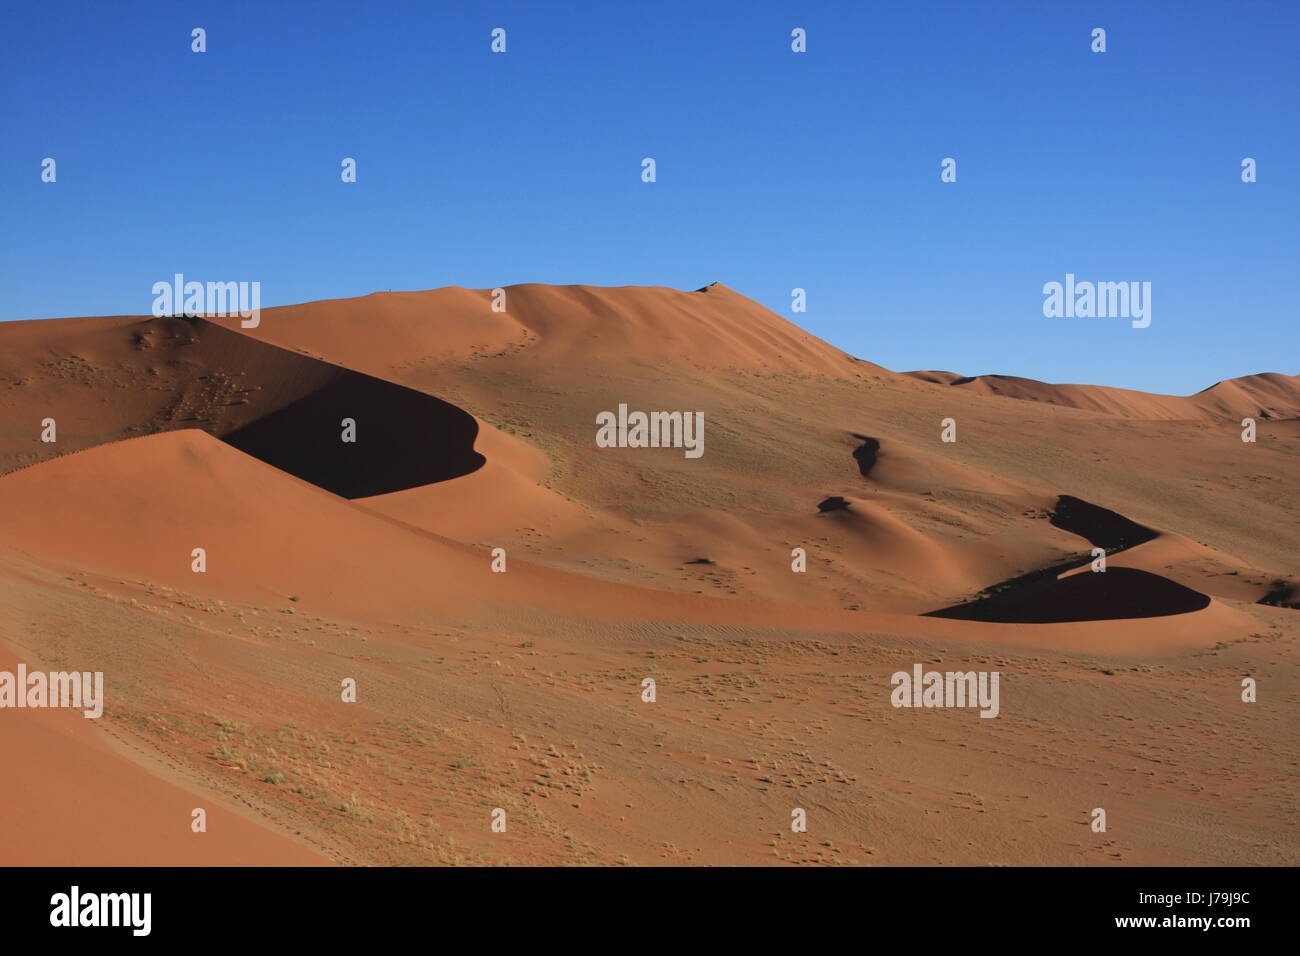 La Namibie Afrique désert tree desert sand dunes de sable du désert voyage arbre arbres Banque D'Images